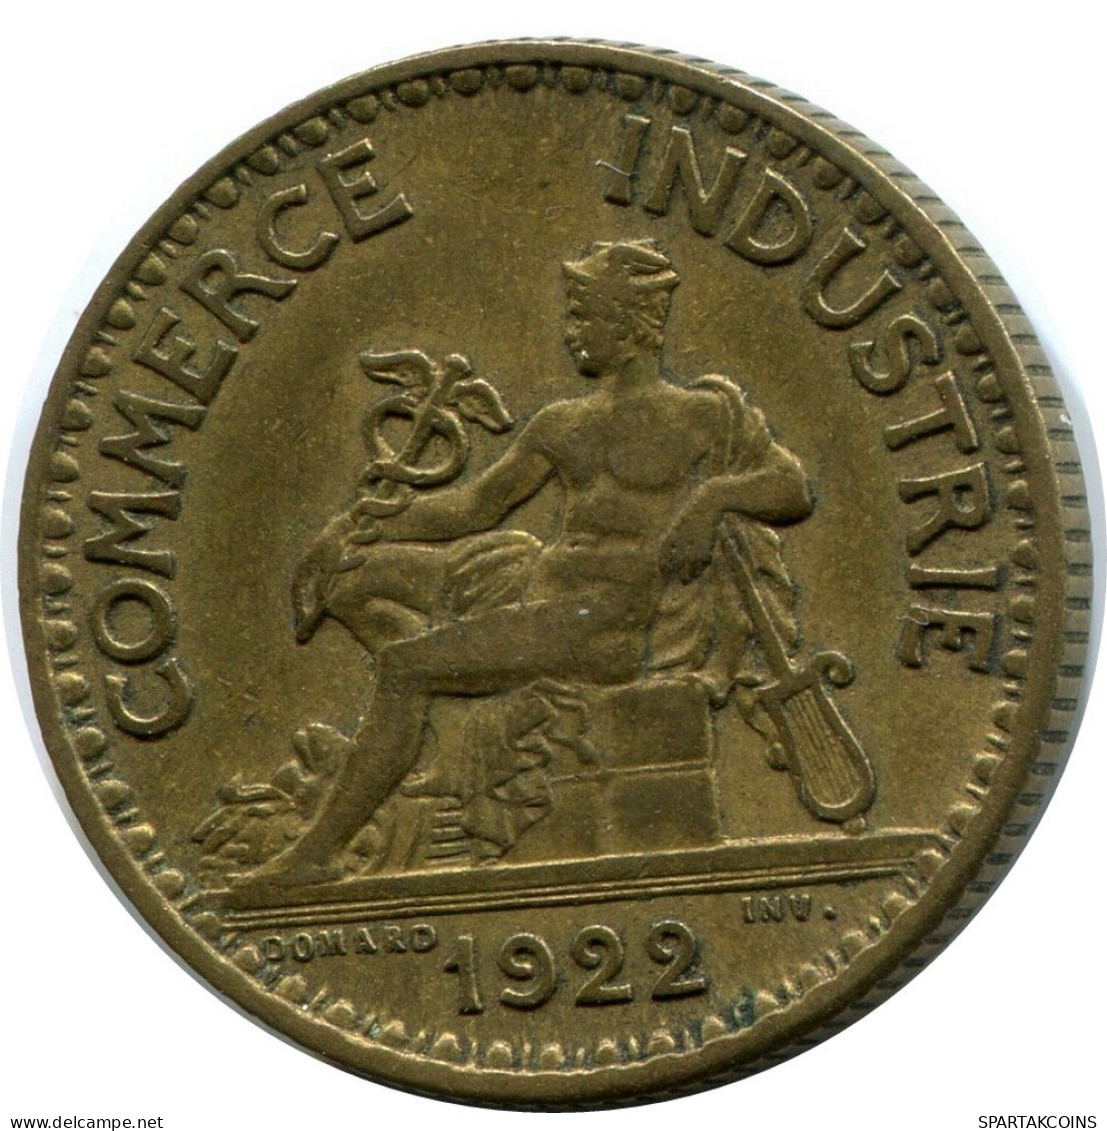 1 FRANC 1922 FRANKREICH FRANCE Französisch Münze #AX874.D.A - 1 Franc